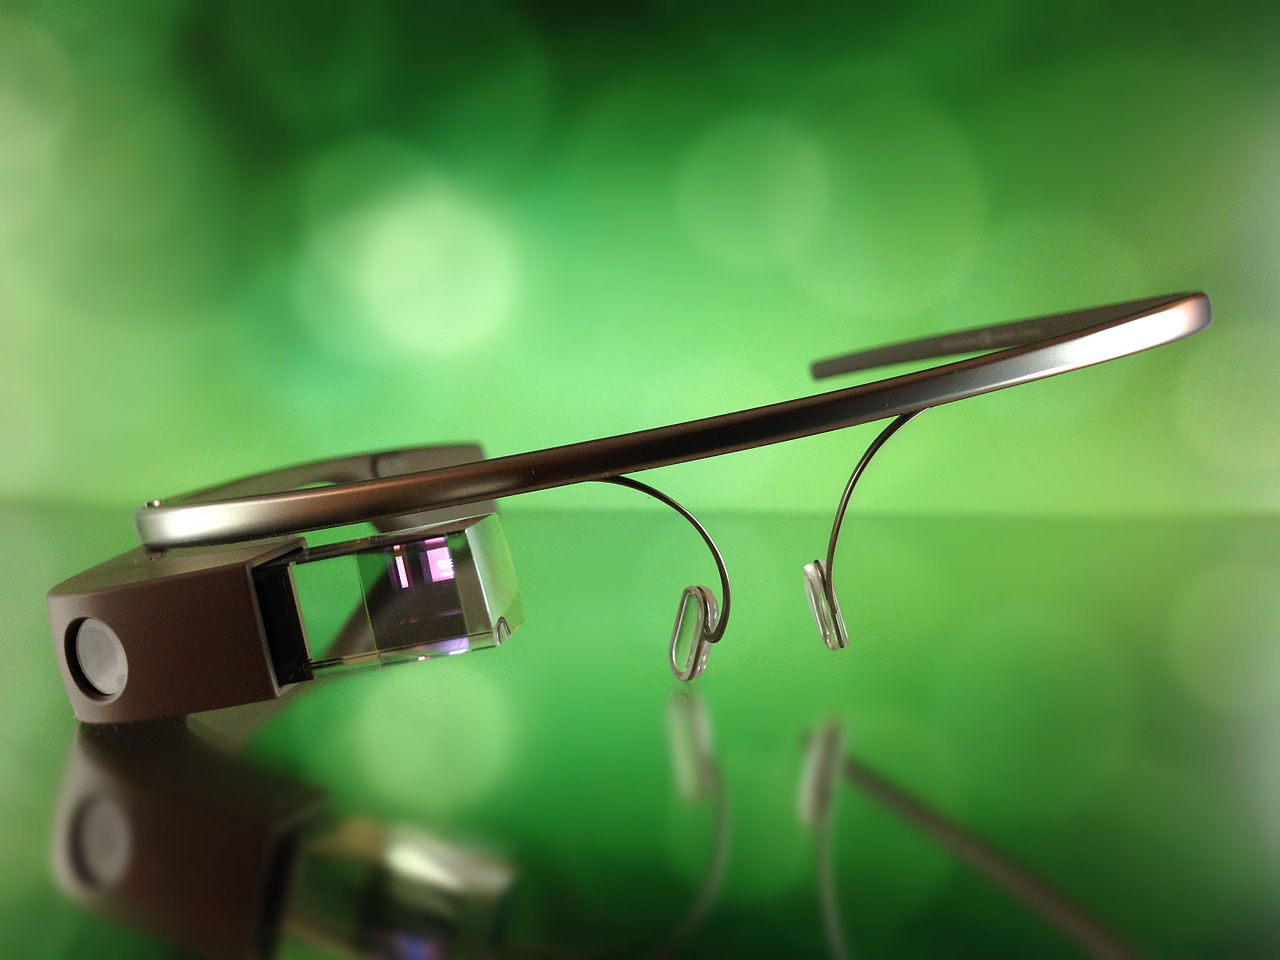 마이크로디스플레이를 탑재한 ‘See Thru Glasses’ 방식의 AR 헤드셋 ‘구글 글라스’ (출처: 위키피디아, Google Glass by Dan Leveille)